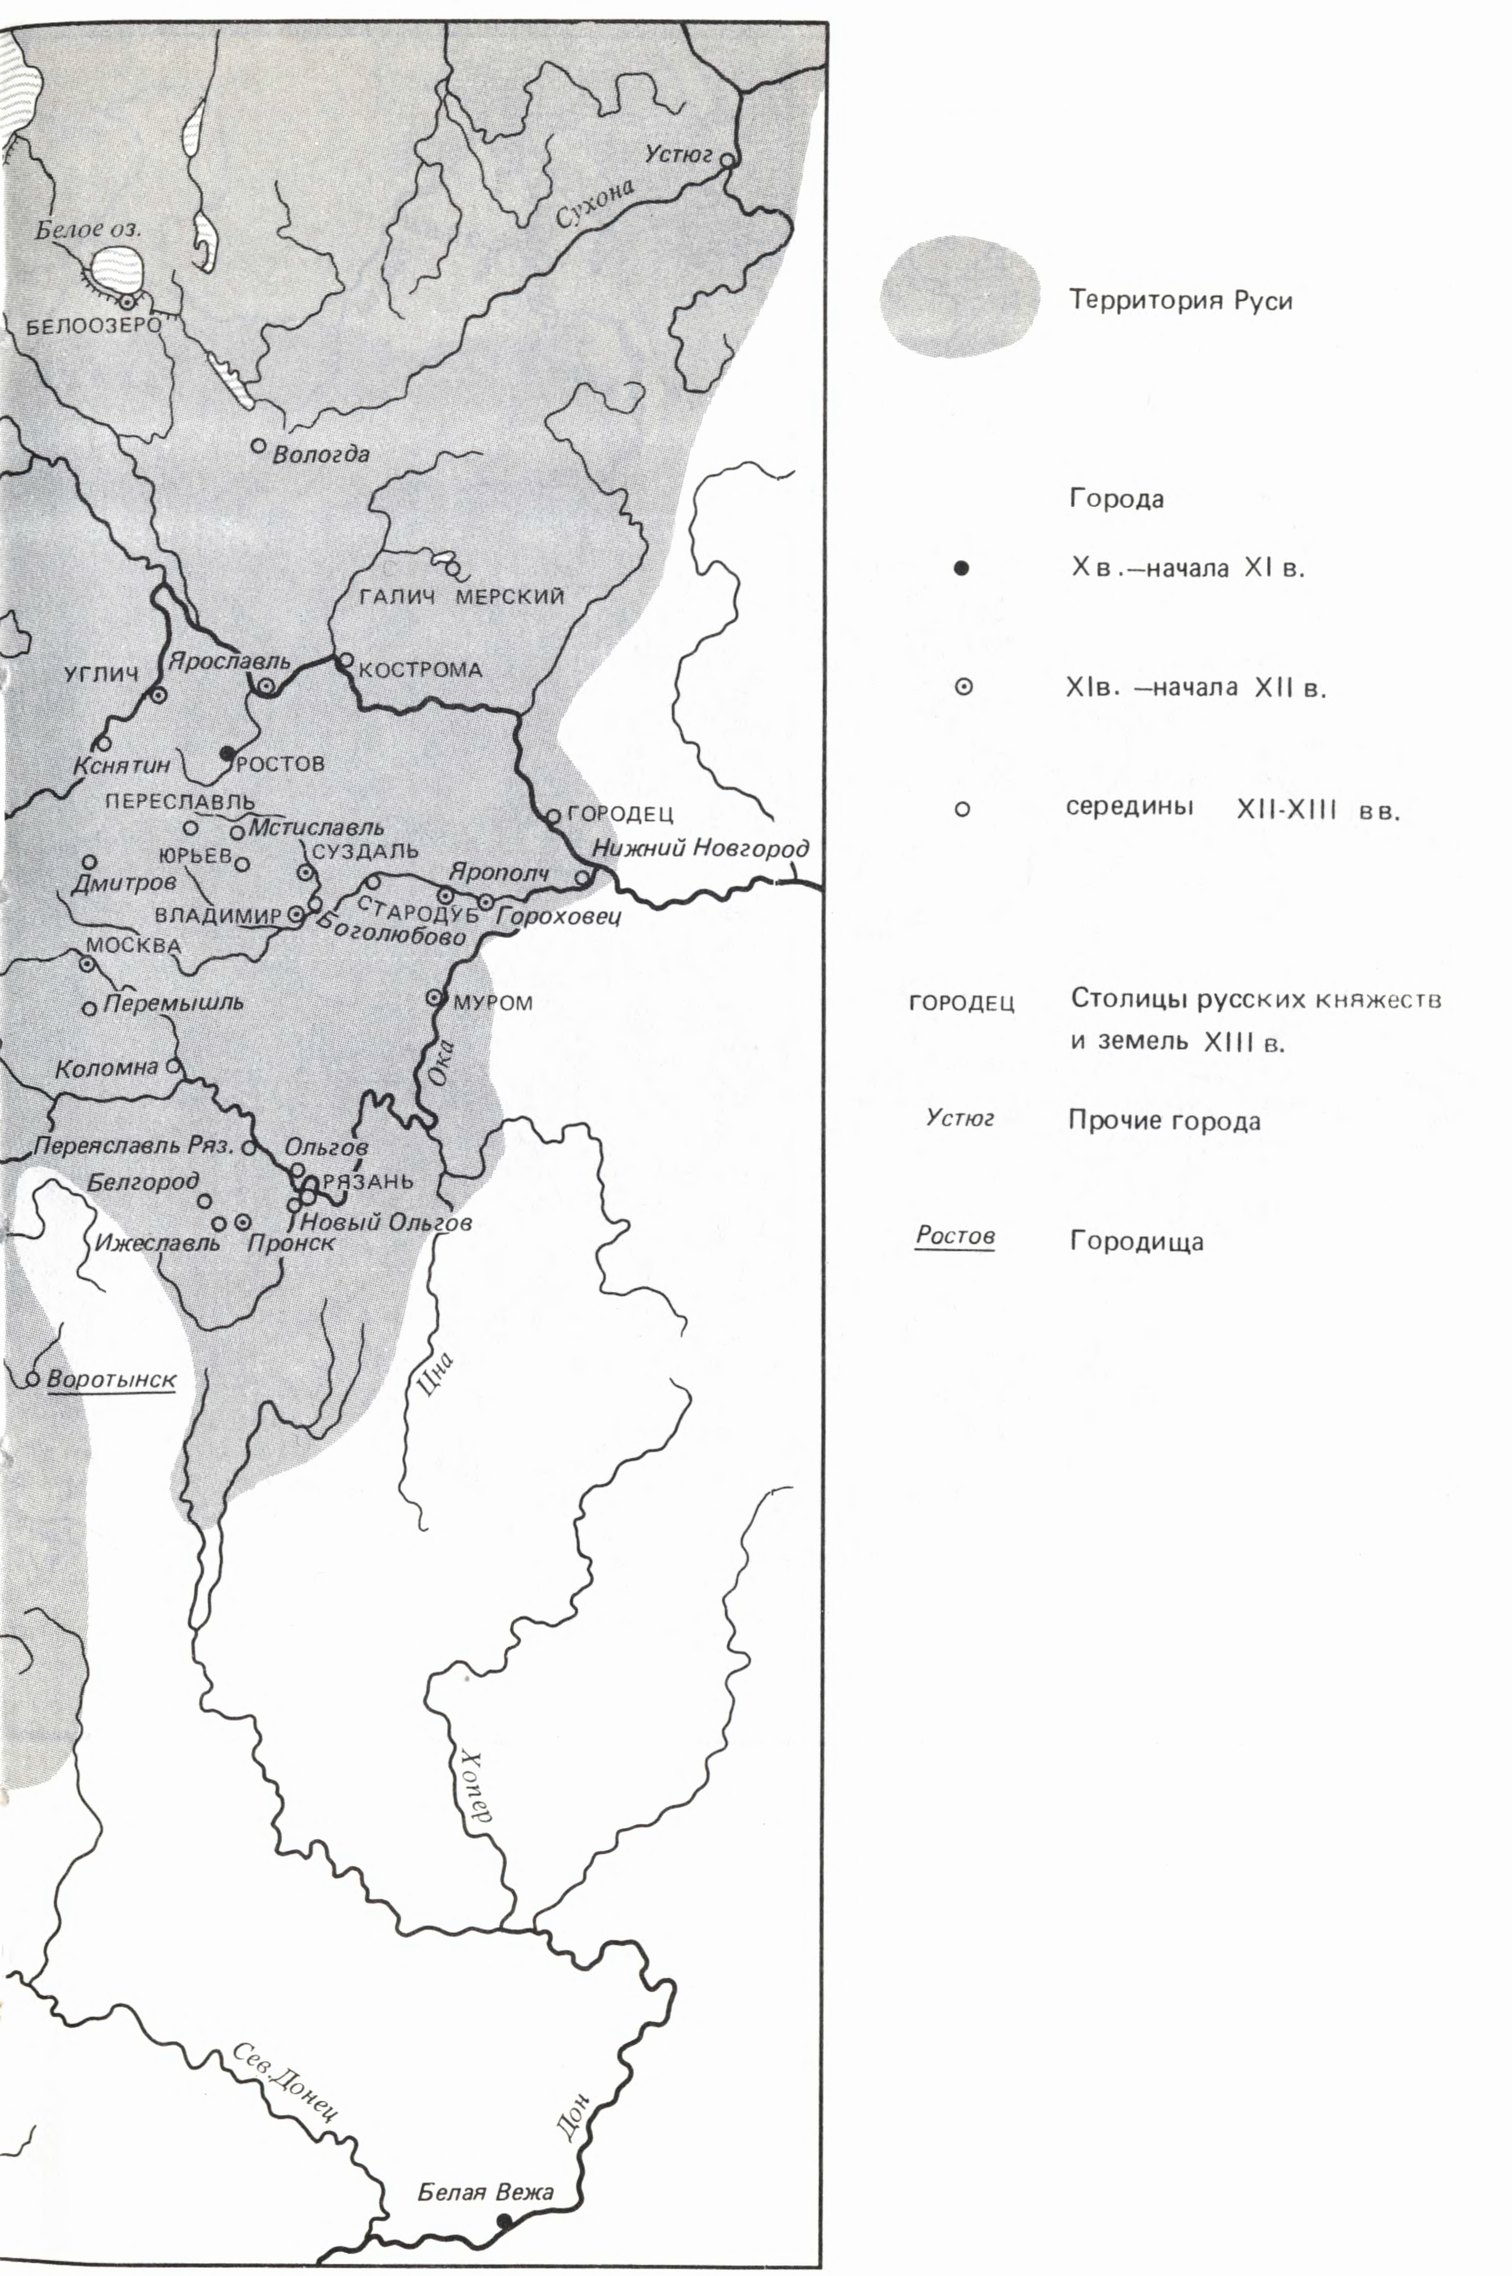 Основные русские города XIII В. (составлена на основании карты А.В. Кузы)